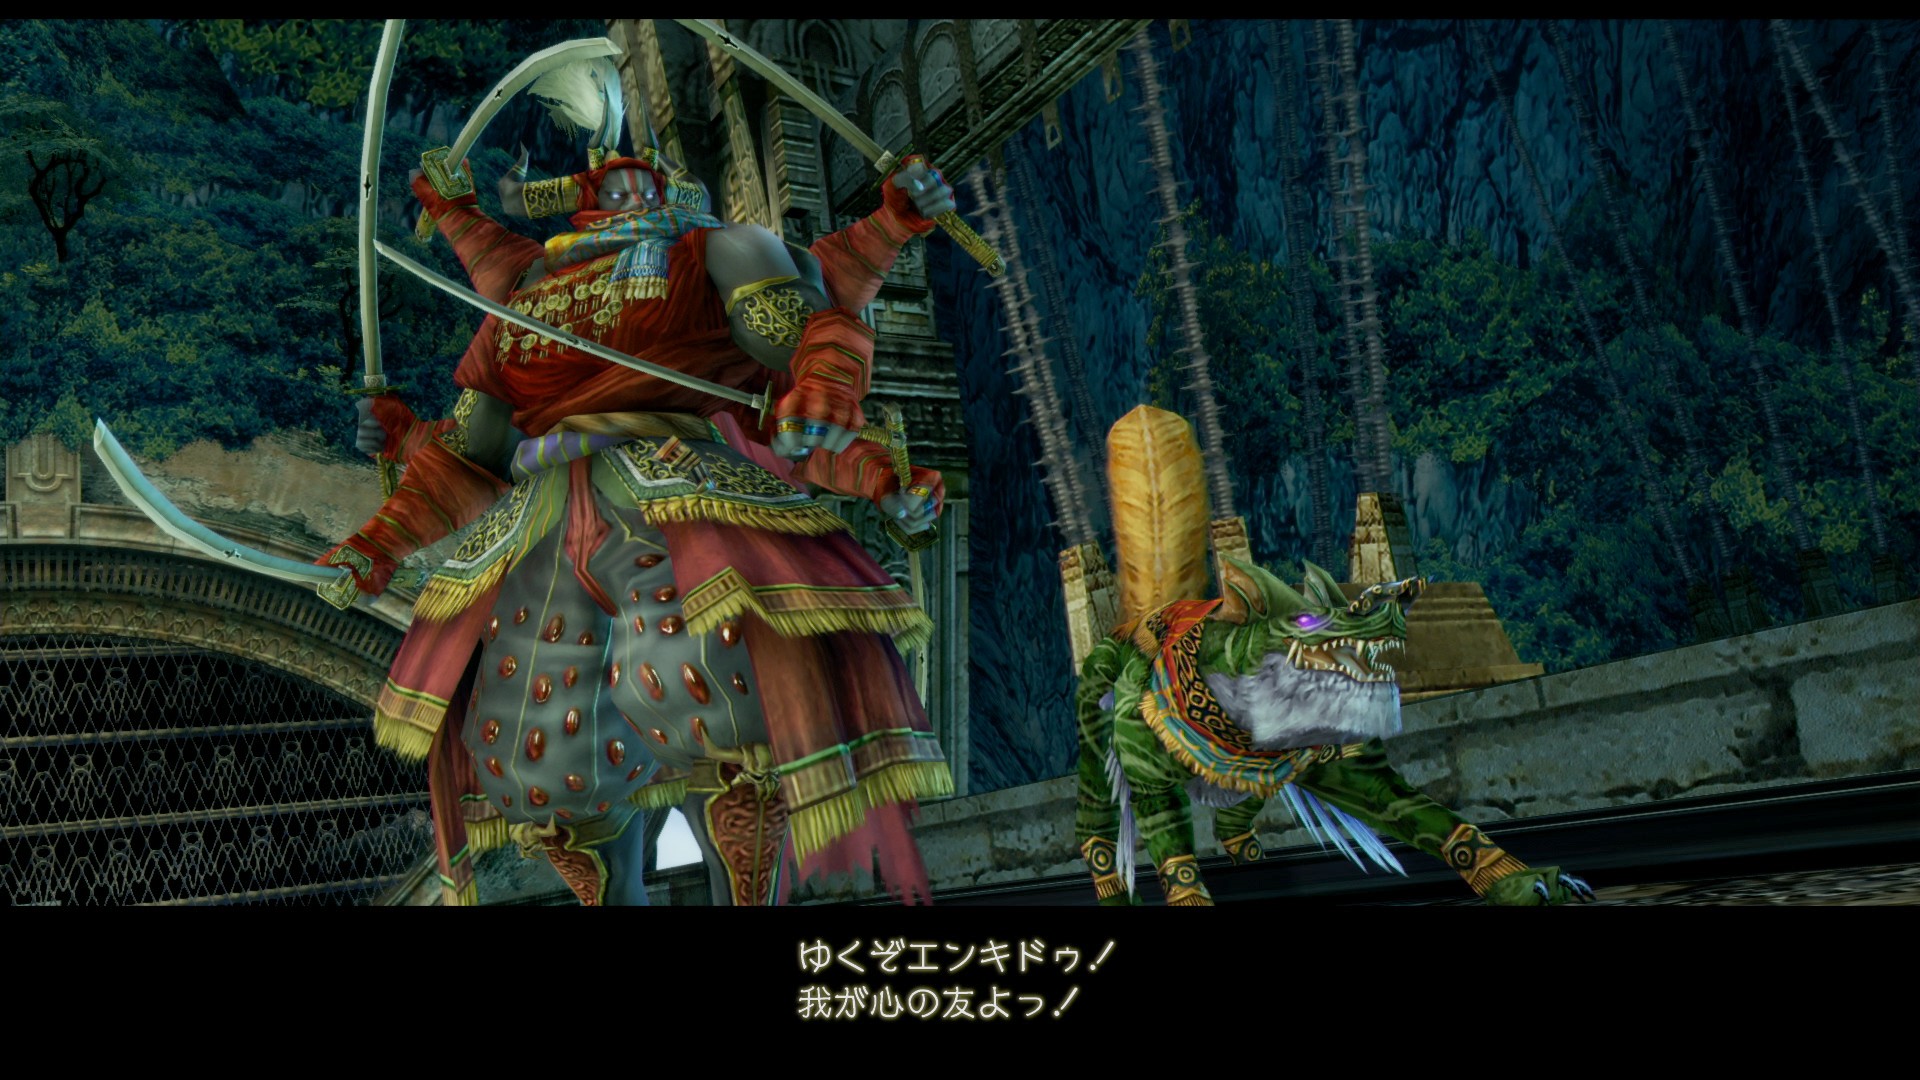 画像集no 016 Final Fantasy Xii The Zodiac Age のやり込み要素モブハントや バトルで活躍するミストナック 召喚獣 を紹介